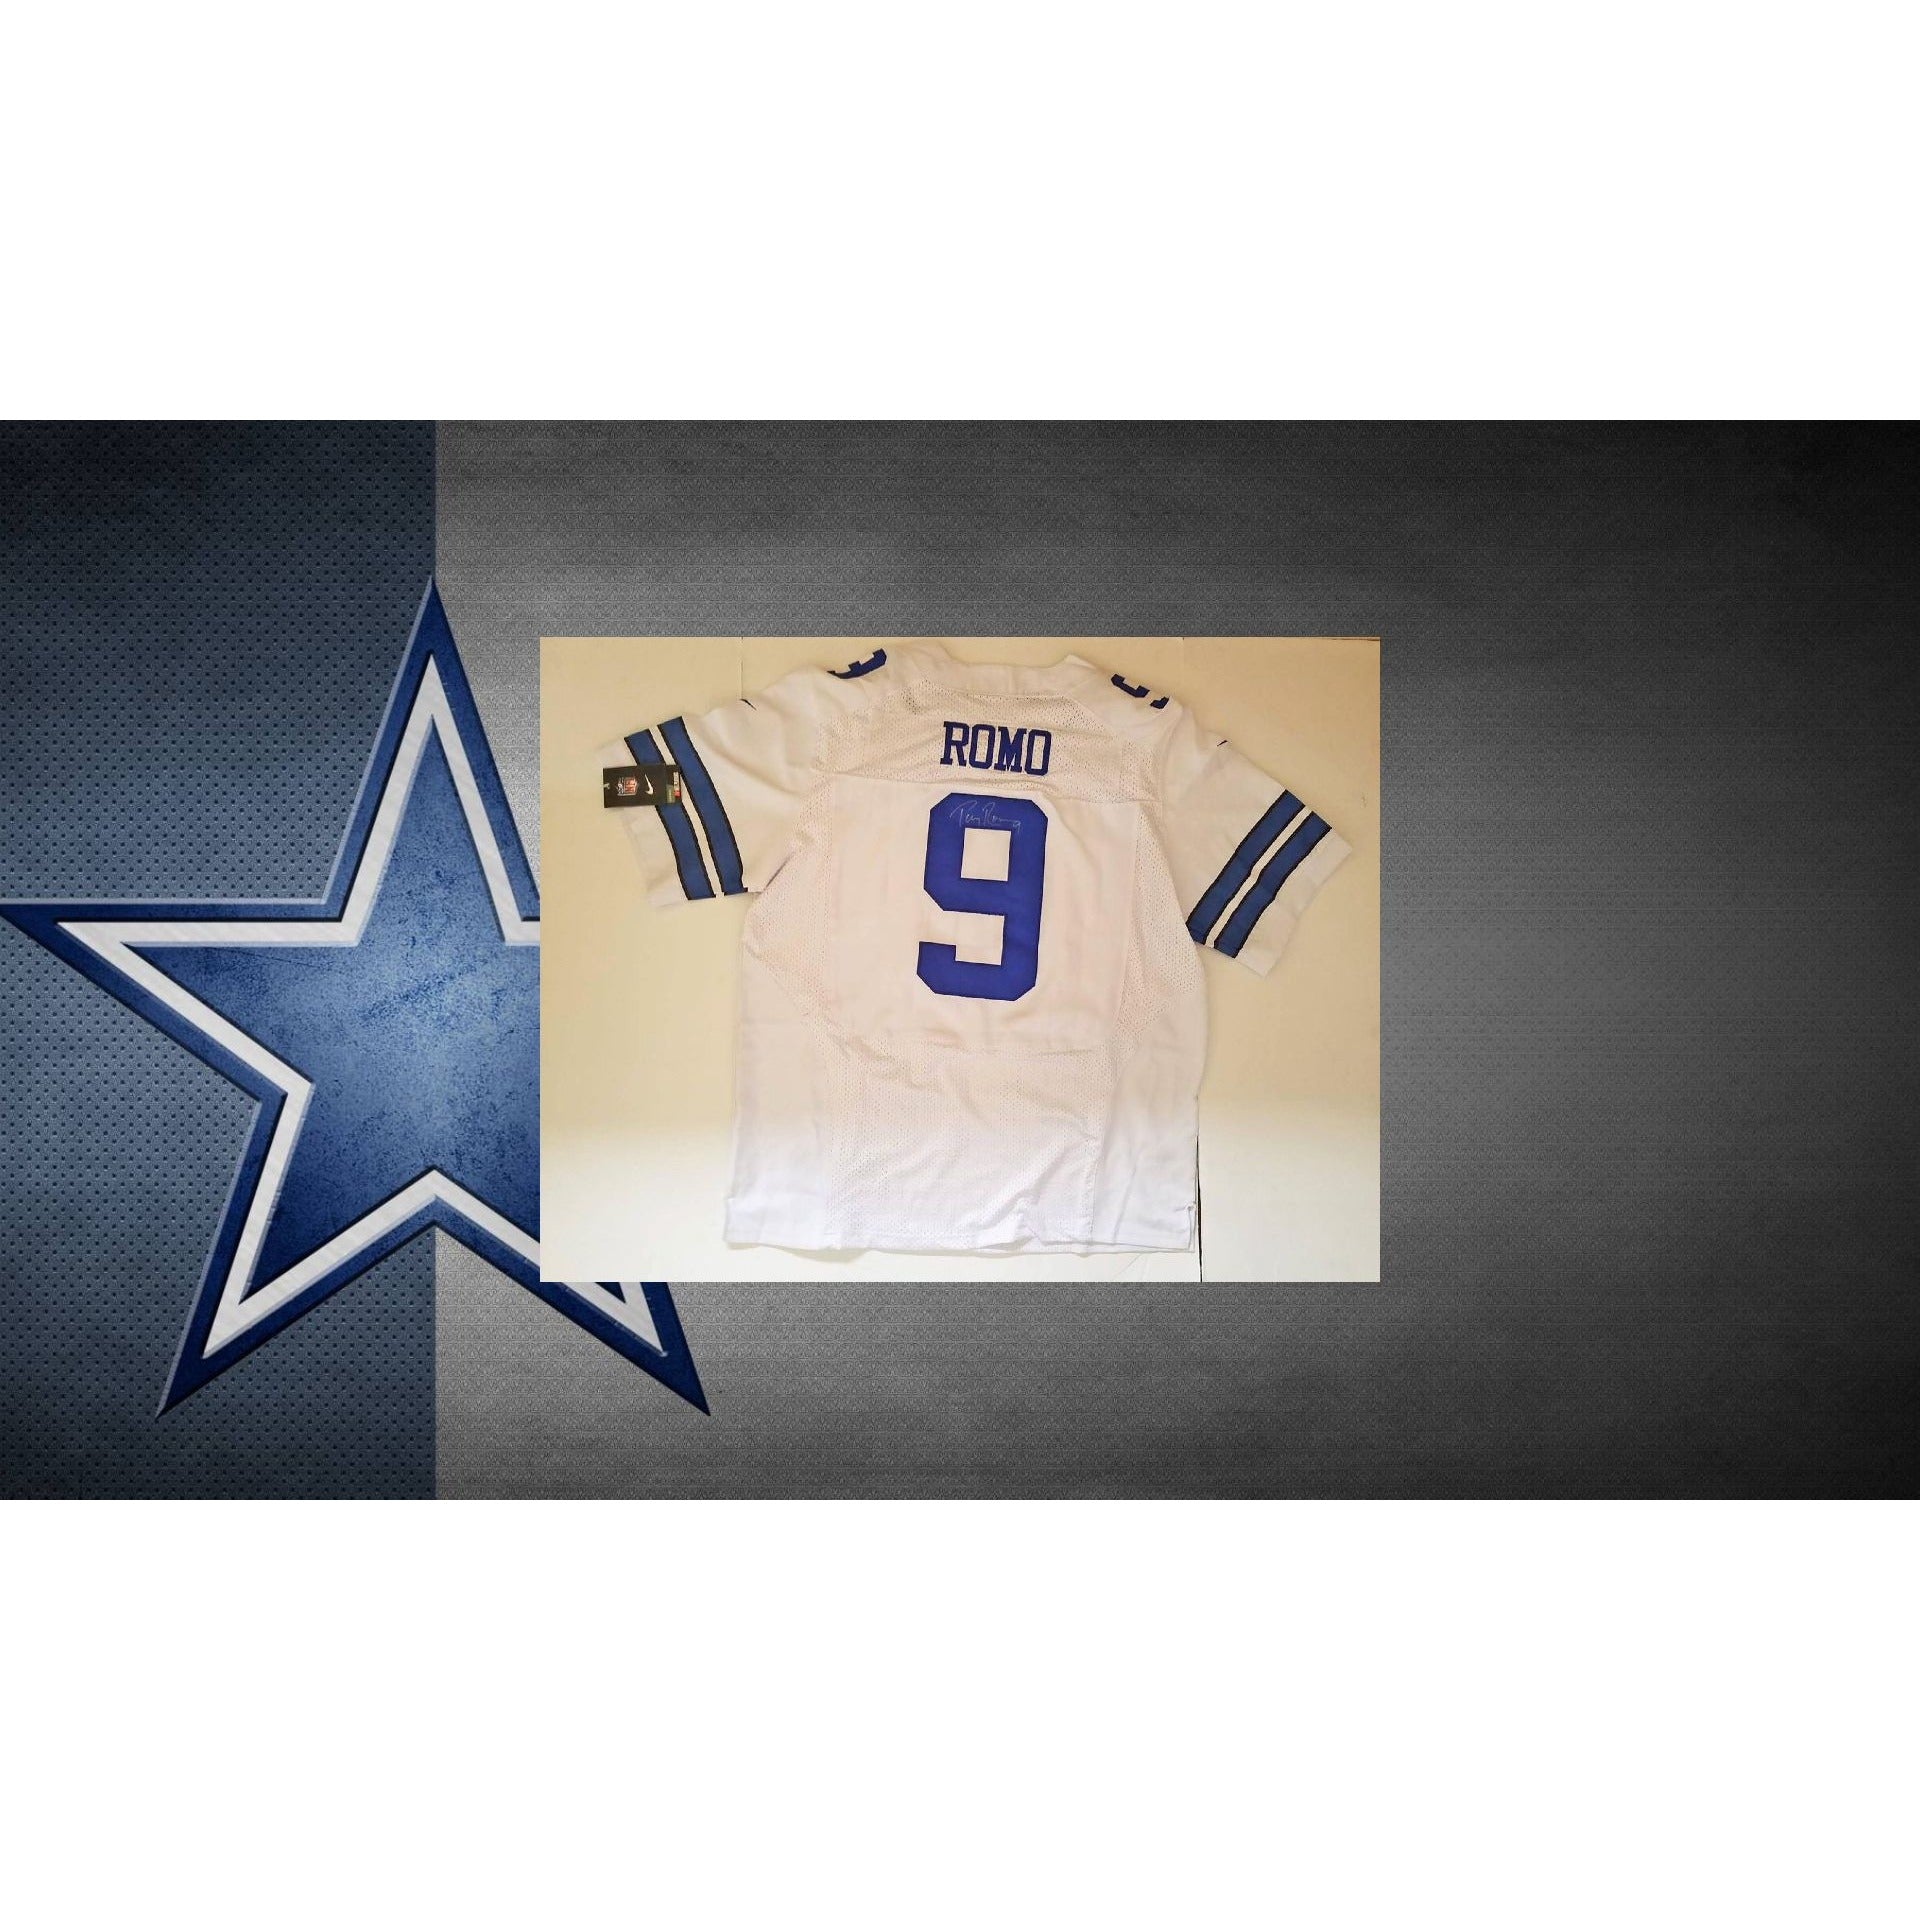 Tony Romo Dallas Cowboys signed jersey